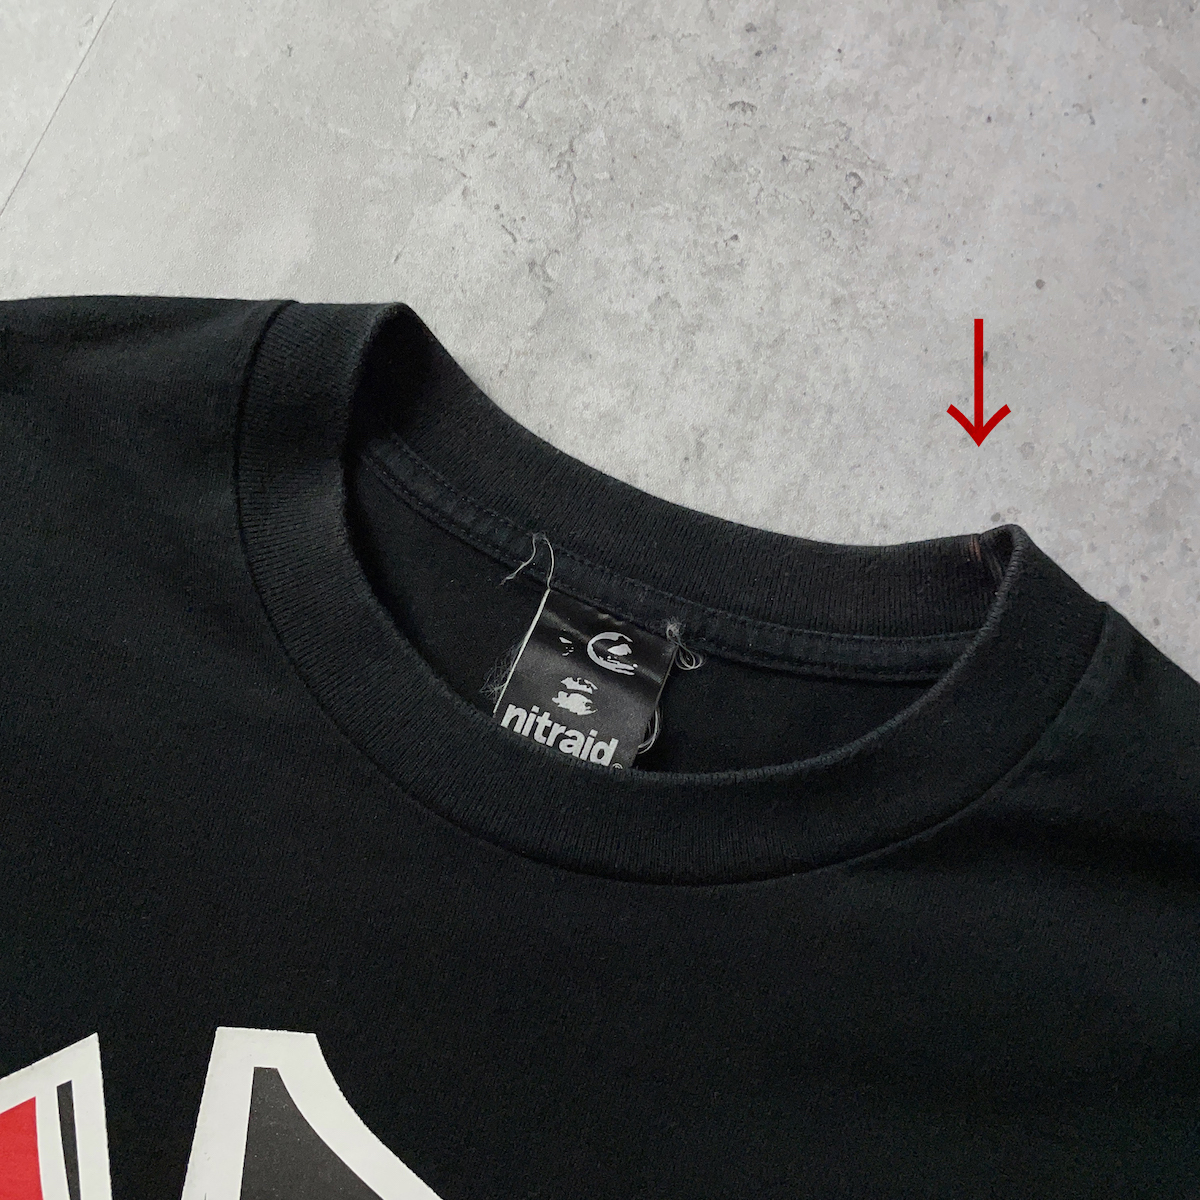 NITRAID мужской M толстый большой Logo принт короткий рукав футболка чёрный черный красный красный хлопок 100% Street звук . знак тяжелый to сделано в Японии 